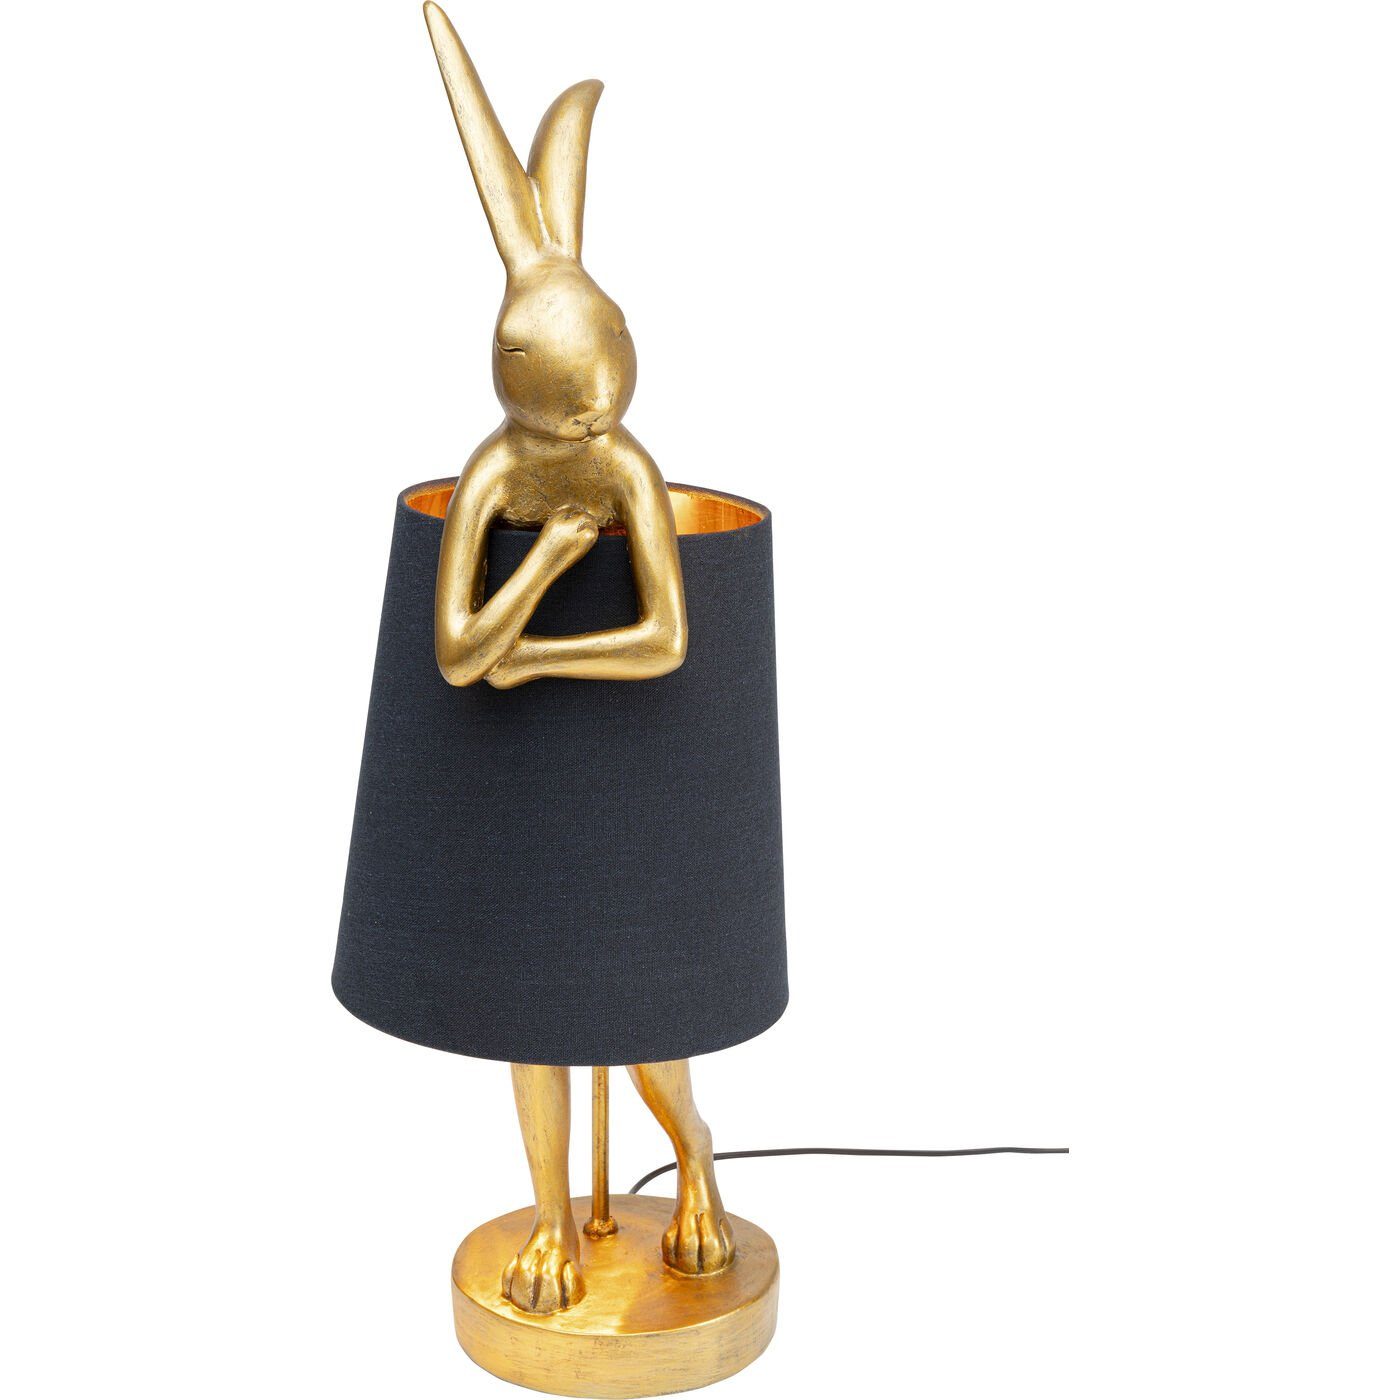 KARE Tischleuchte Animal Rabbit | Tischlampen